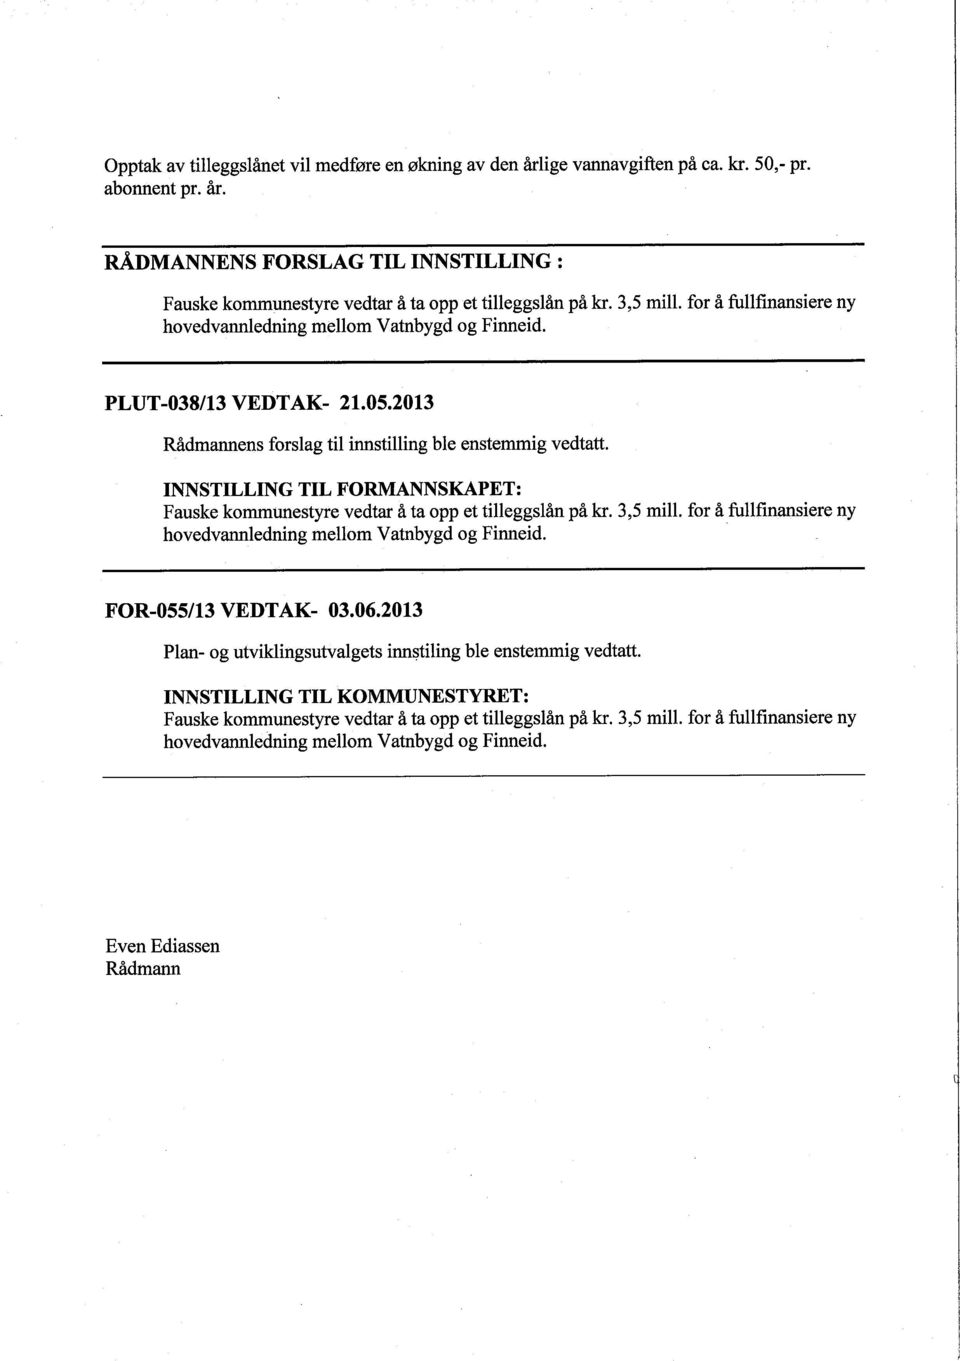 INNSTILLING TIL FORMANNSKAPET: Fauske kommunestyre vedtar å ta opp et tileggslån på kr. 3,5 mil. for å fullfinansiere ny hovedvanledning mellom Vatnbygd og Finneid.. FOR-055/13 VEDTAK- 03.06.